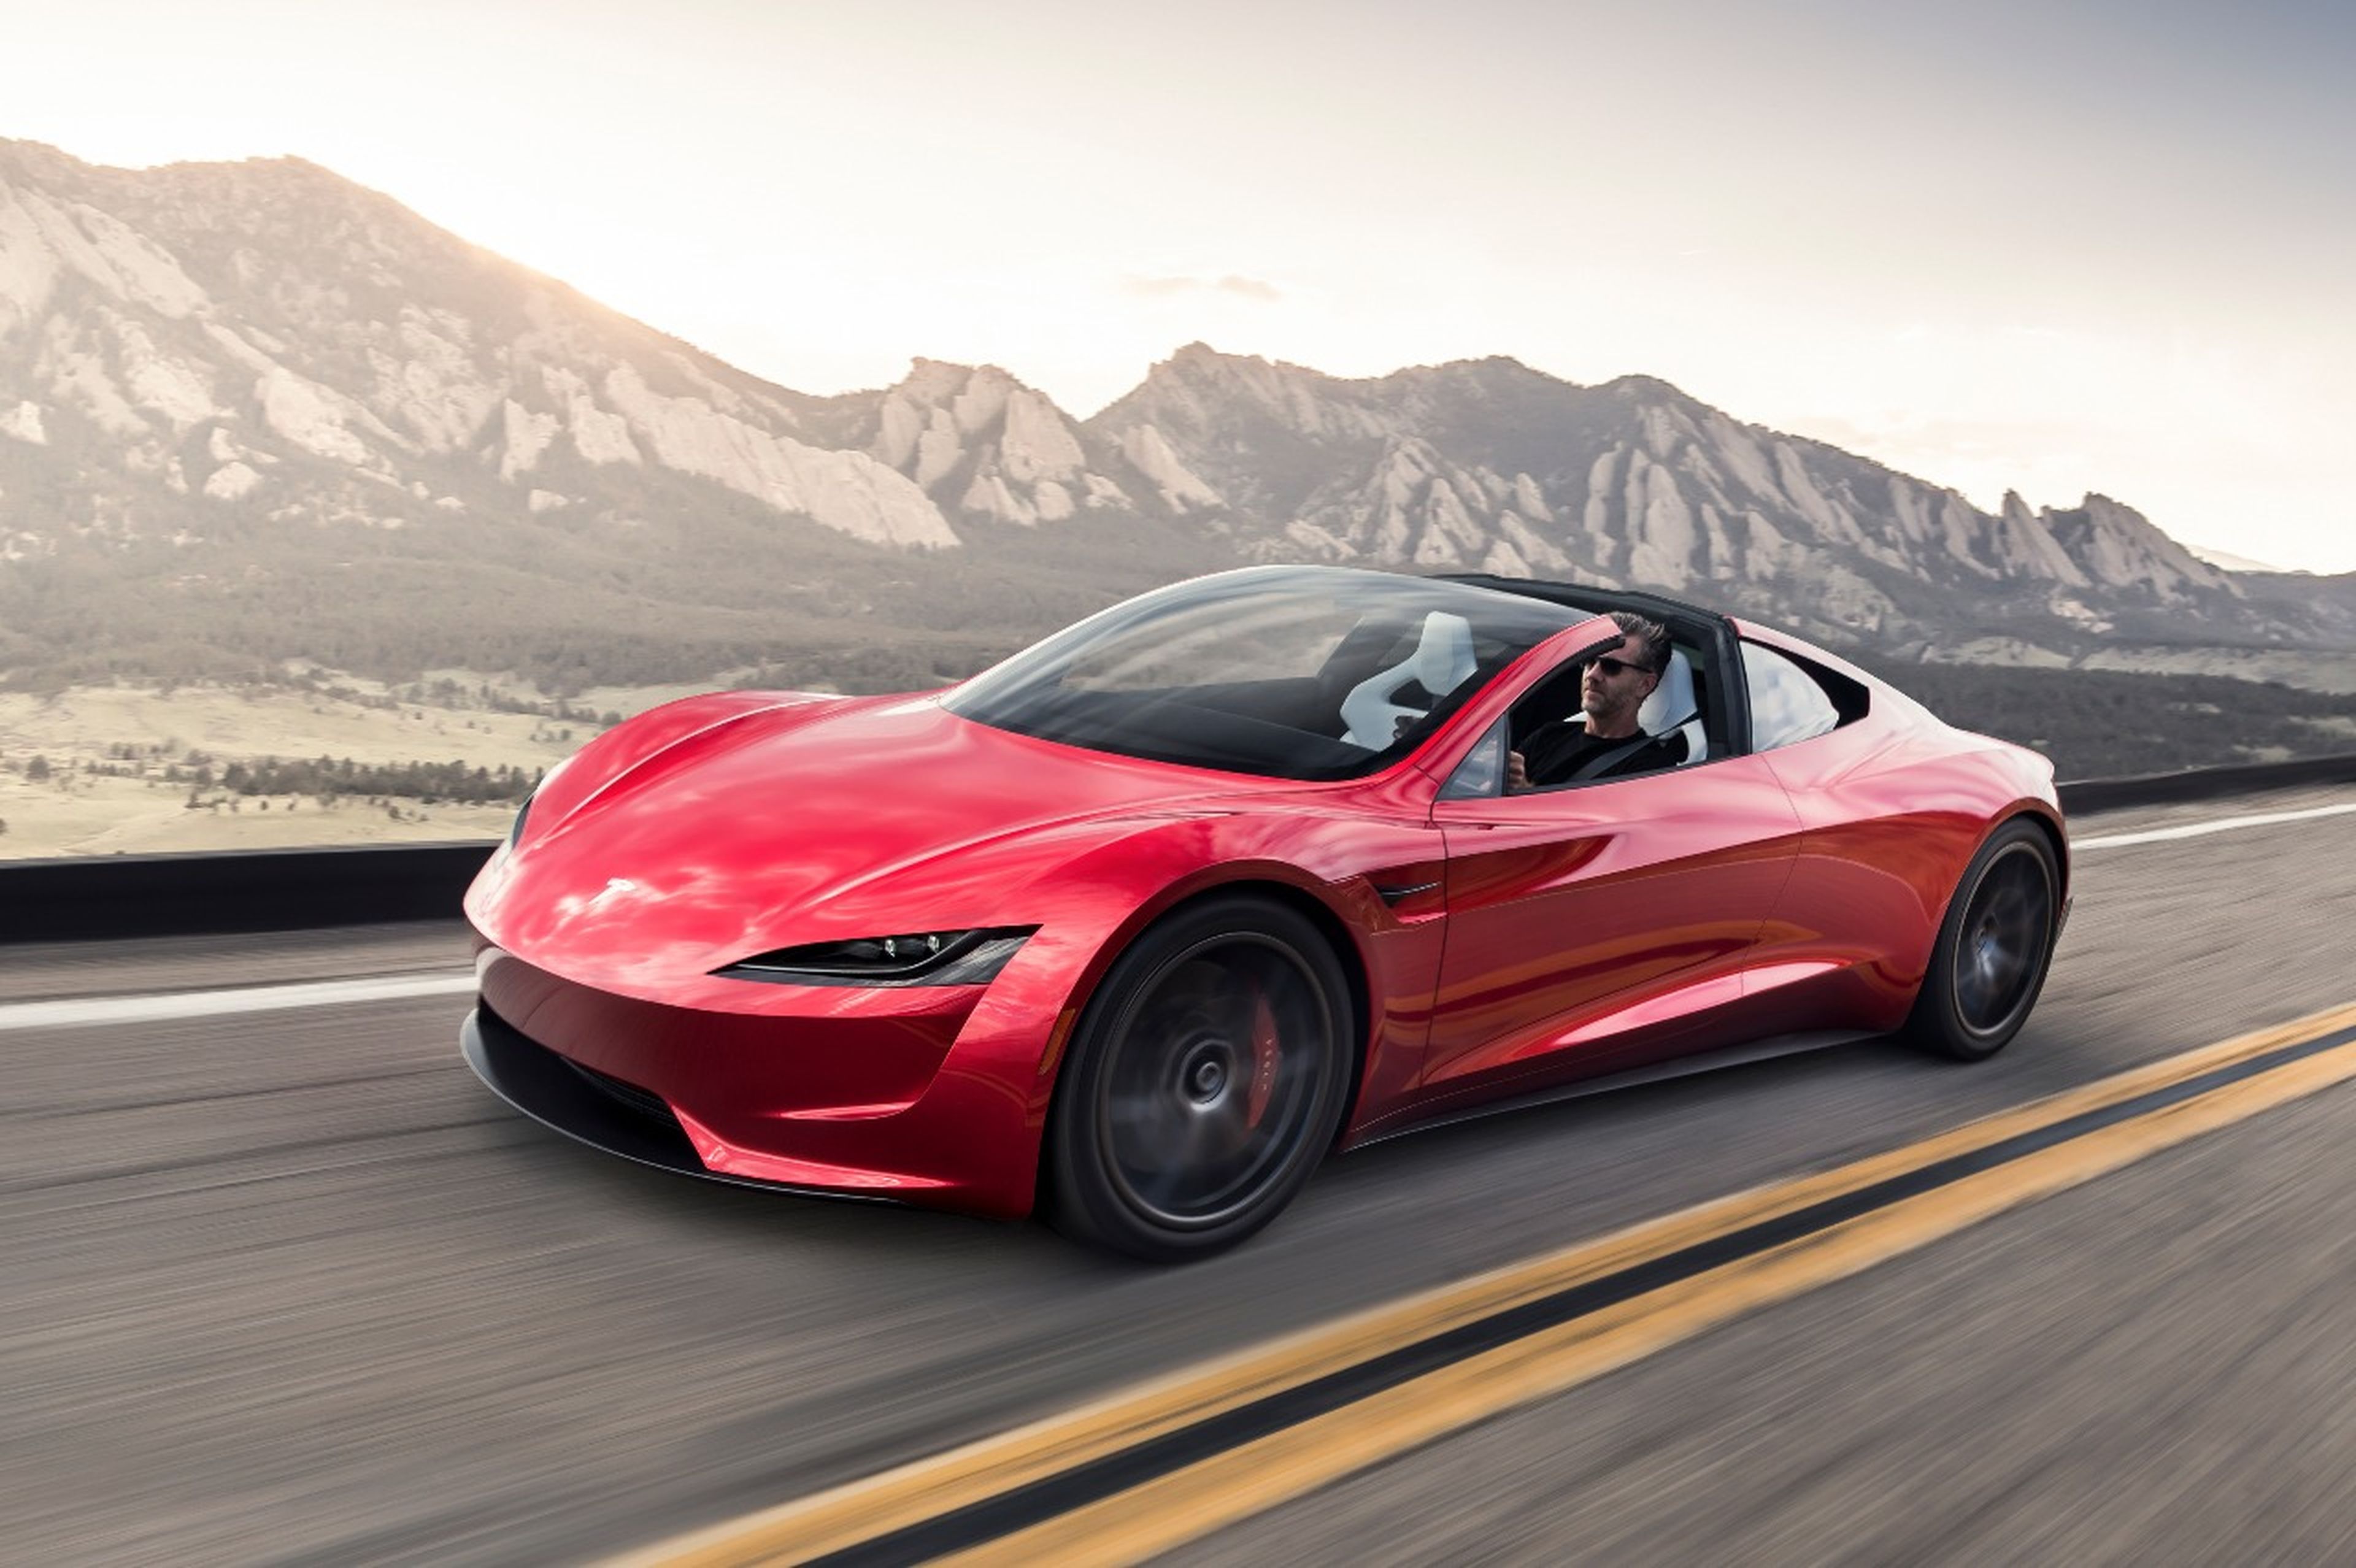 El Tesla Roadster podrá adquirirse con bitcoins cuando estos sean energéticamente más limpios.